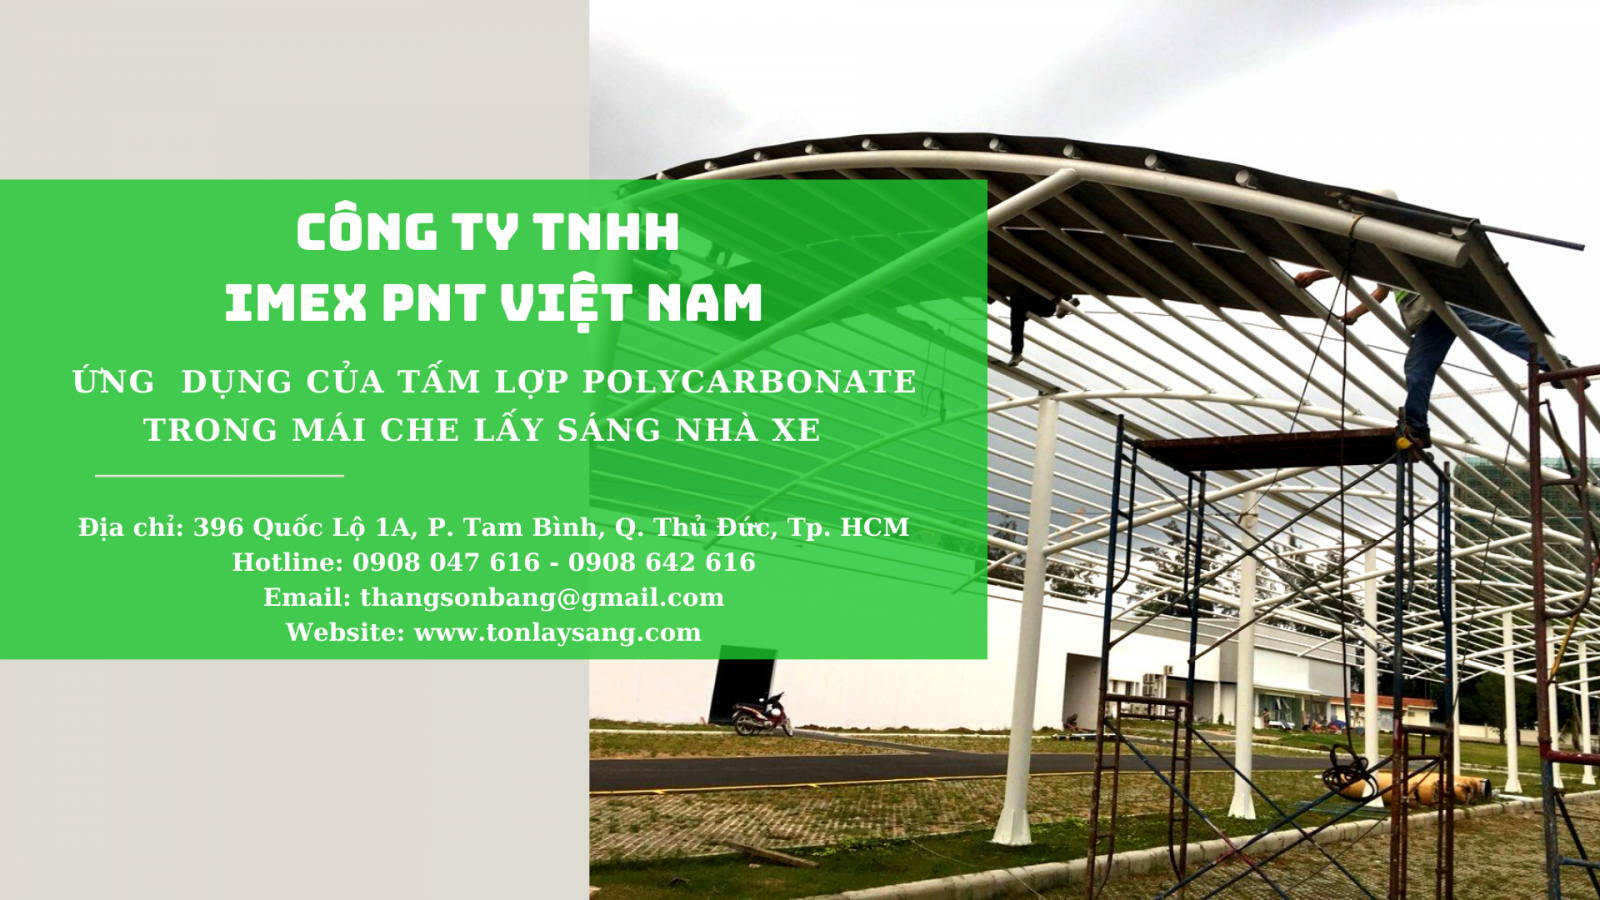 Imex PNT Việt Nam - Quy trình chuyên nghiệp